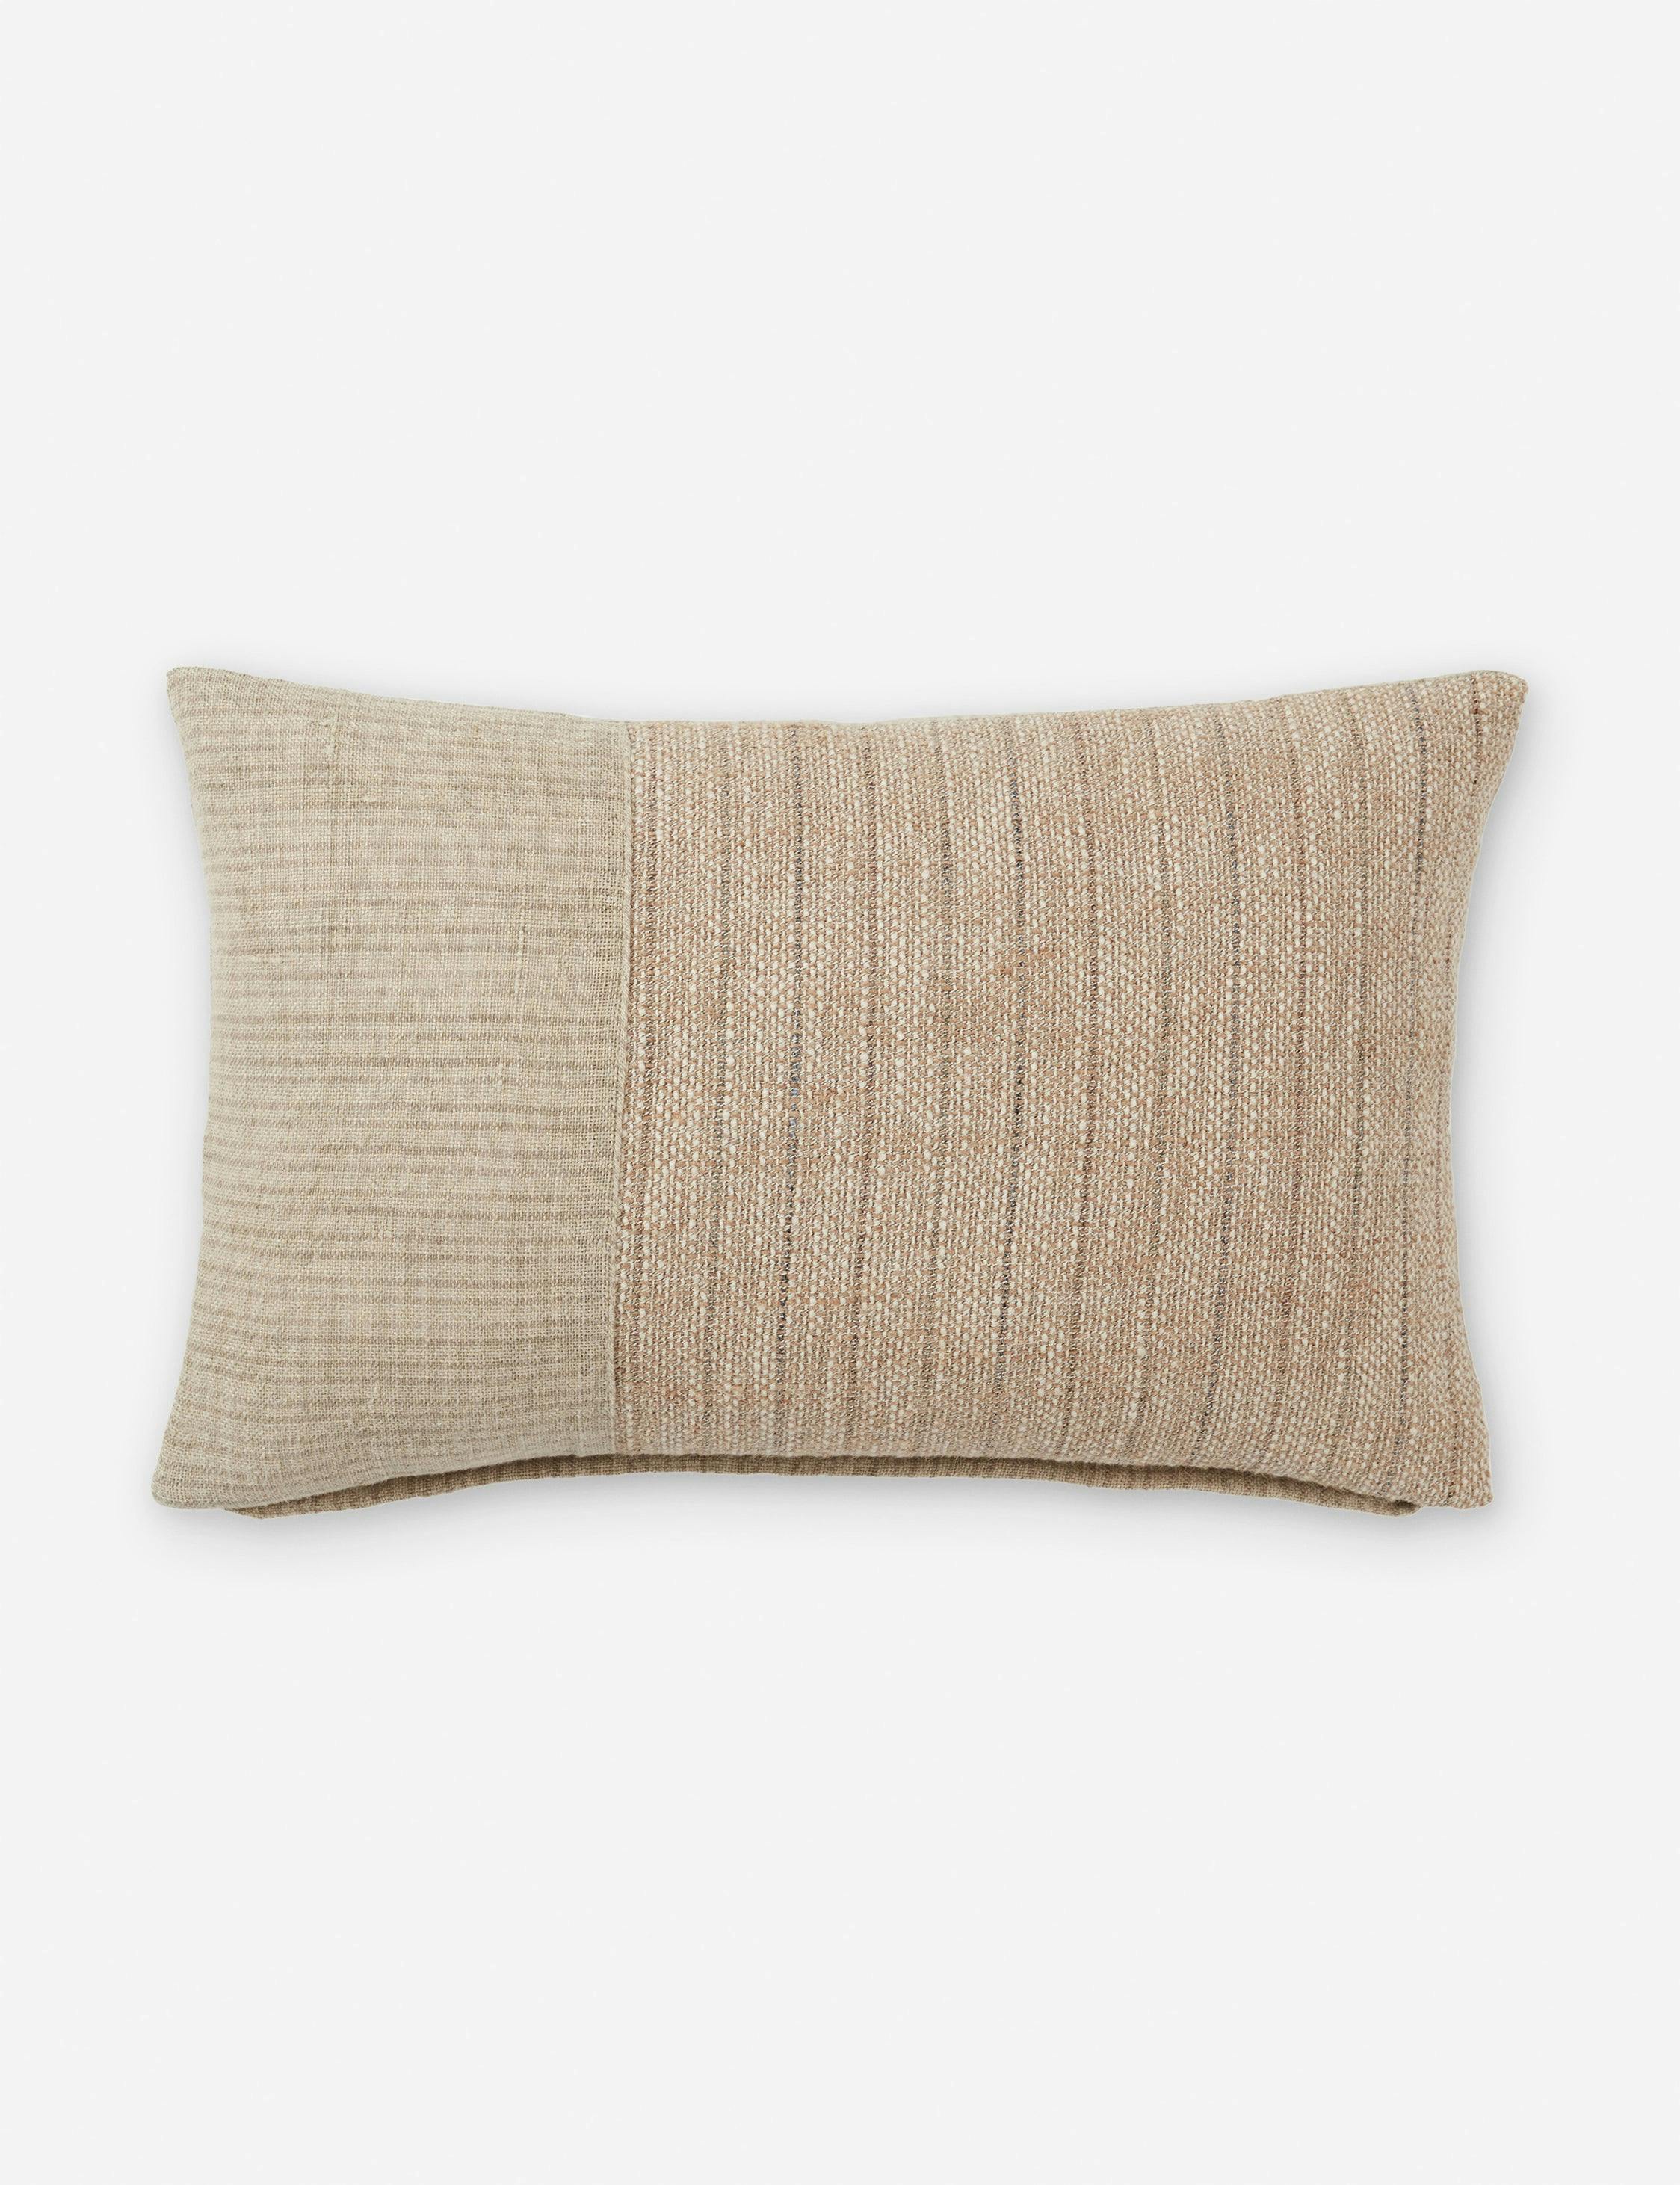 Asger 13"x21" Light Brown/Cream Striped Down Lumbar Pillow